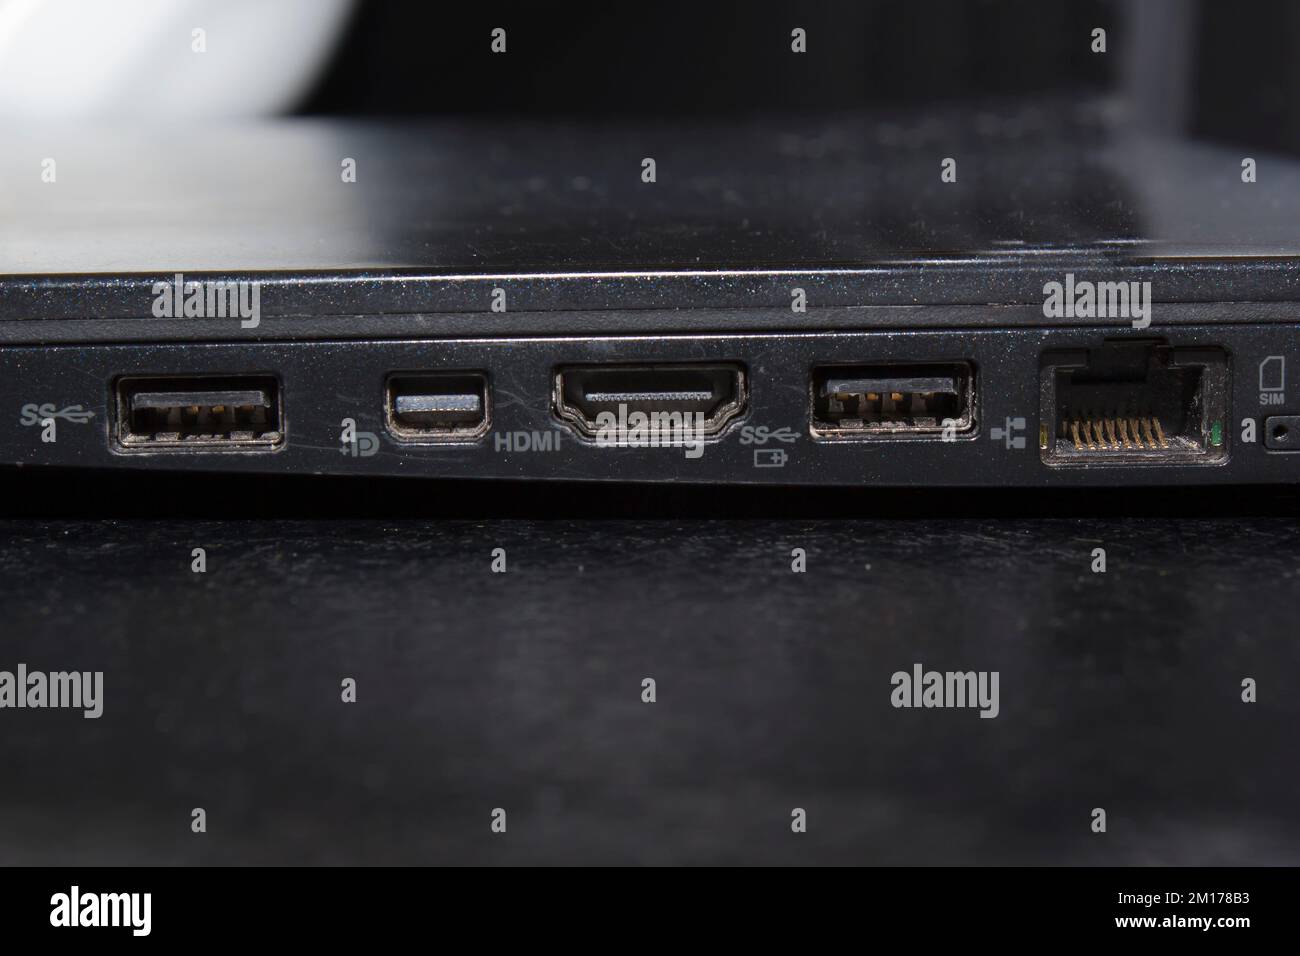 Ports pour ordinateur portable HDMI USB ethernet noir Banque D'Images